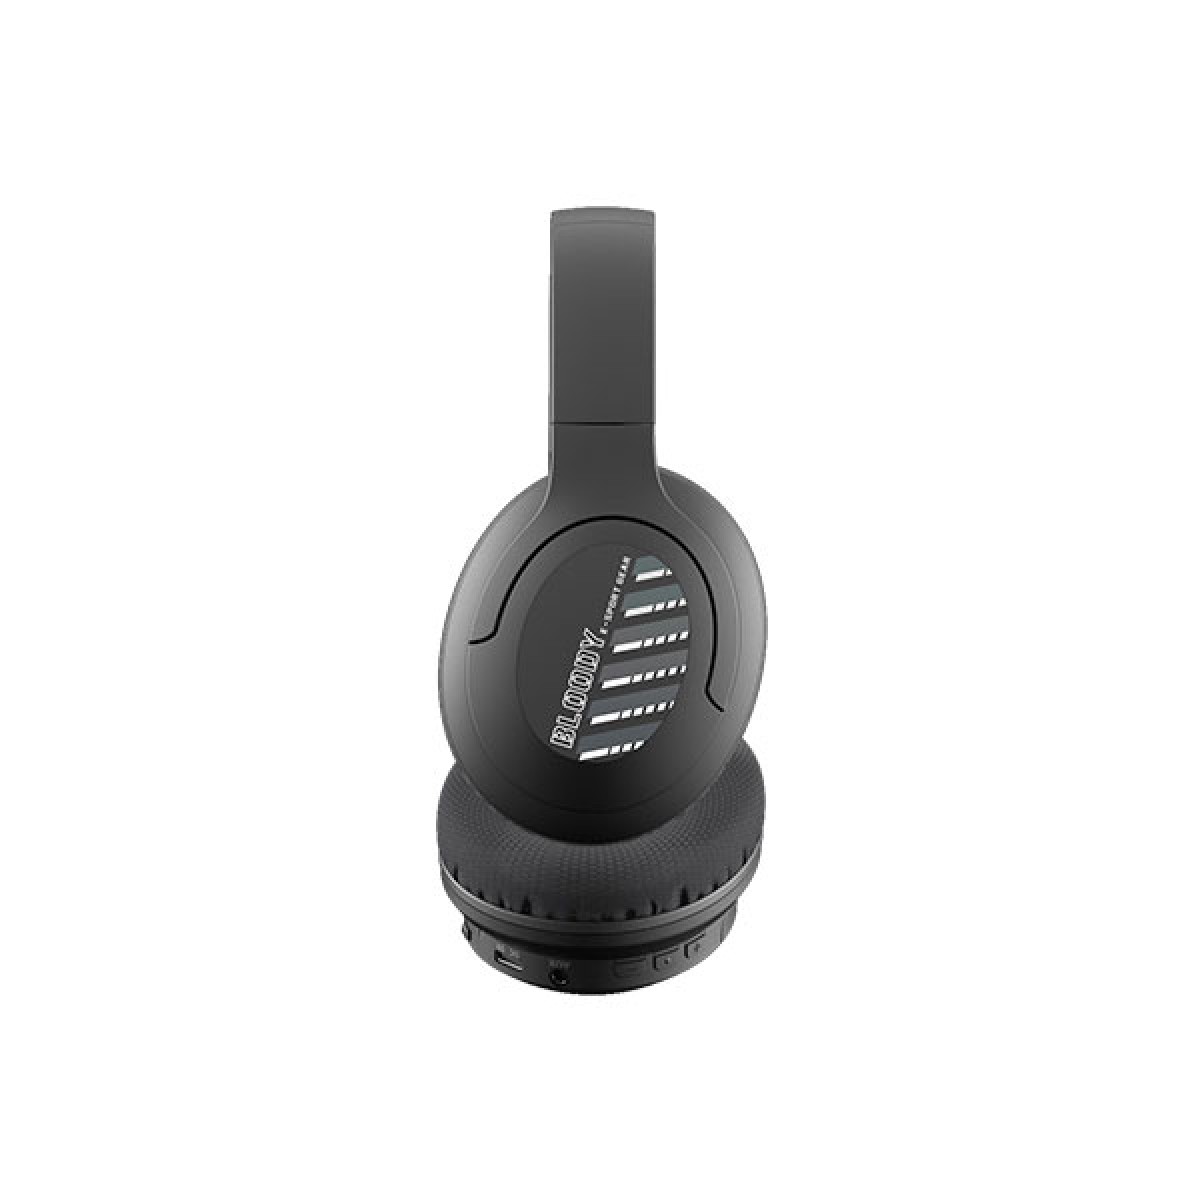 Ασύρματα Ακουστικά Bluetooth V5.3 με Power Bank και Ένδειξη Μπαταρίας M10 Newest σε Μαύρο Χρώμα ...